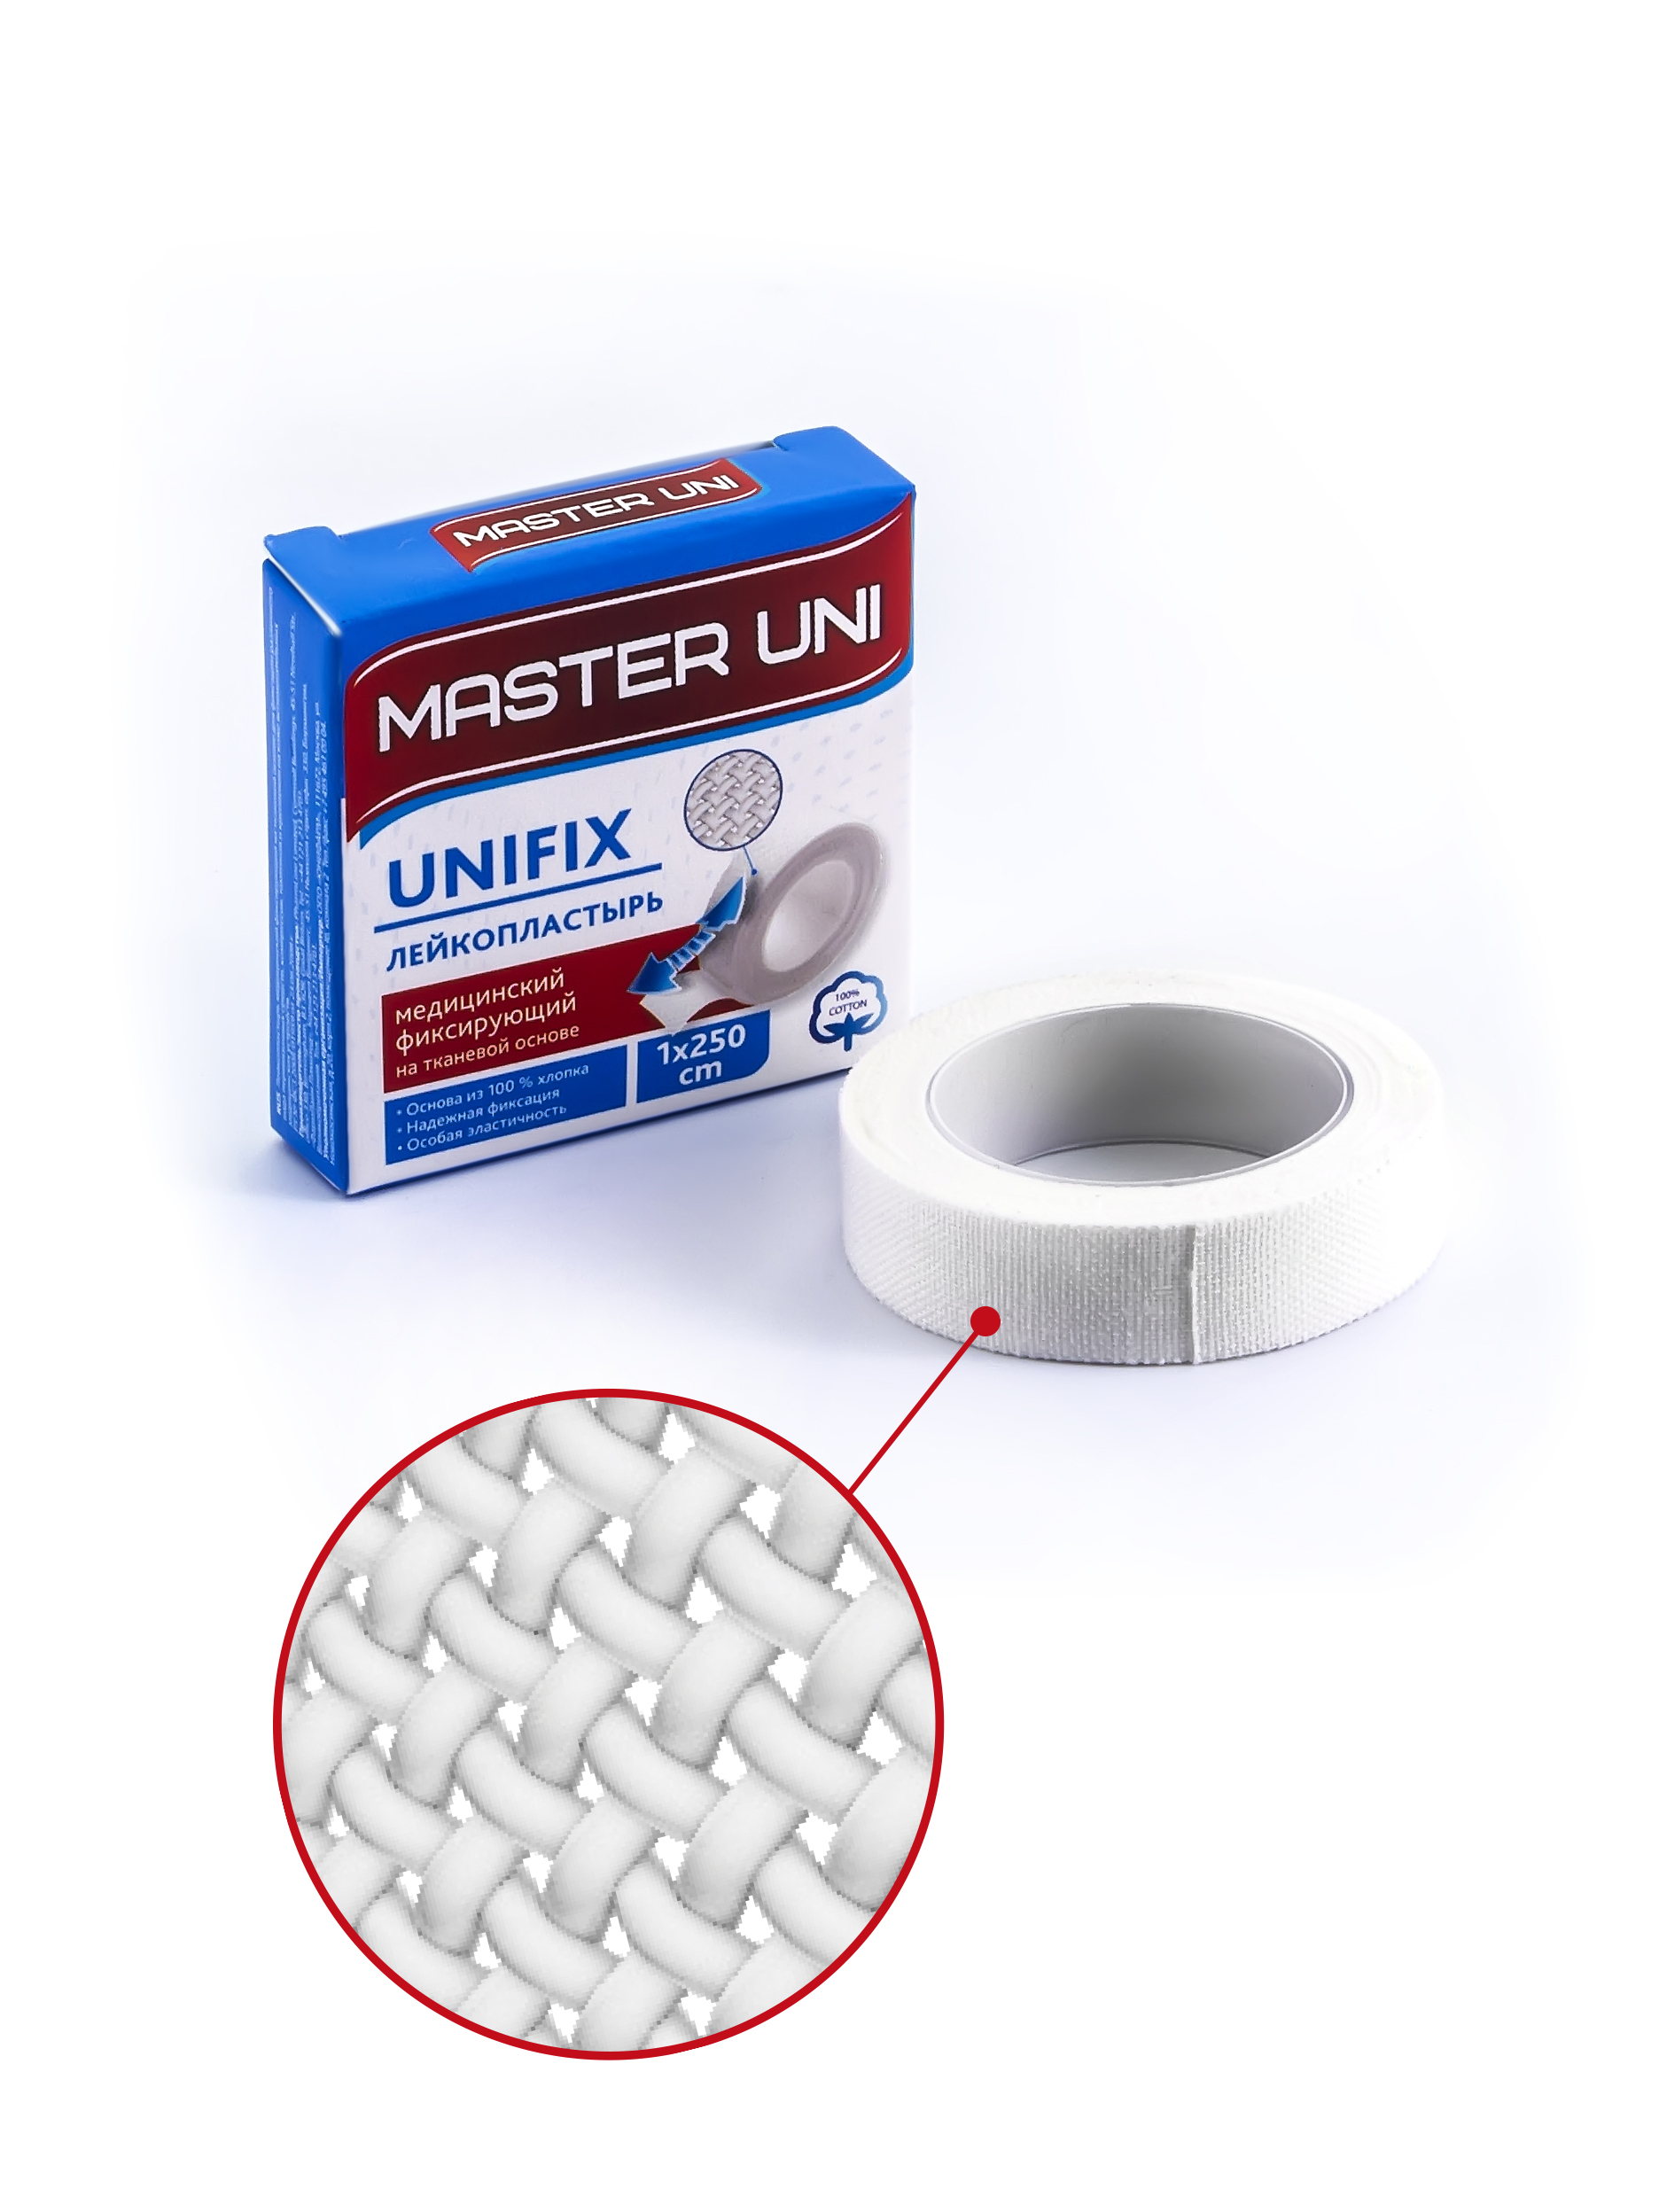 Купить UNIFIX Лейкопластырь 1 х 500 см на тканевой основе, Пластырь Master Uni Unifix фиксирующий на тканевой основе 1 х 500 см